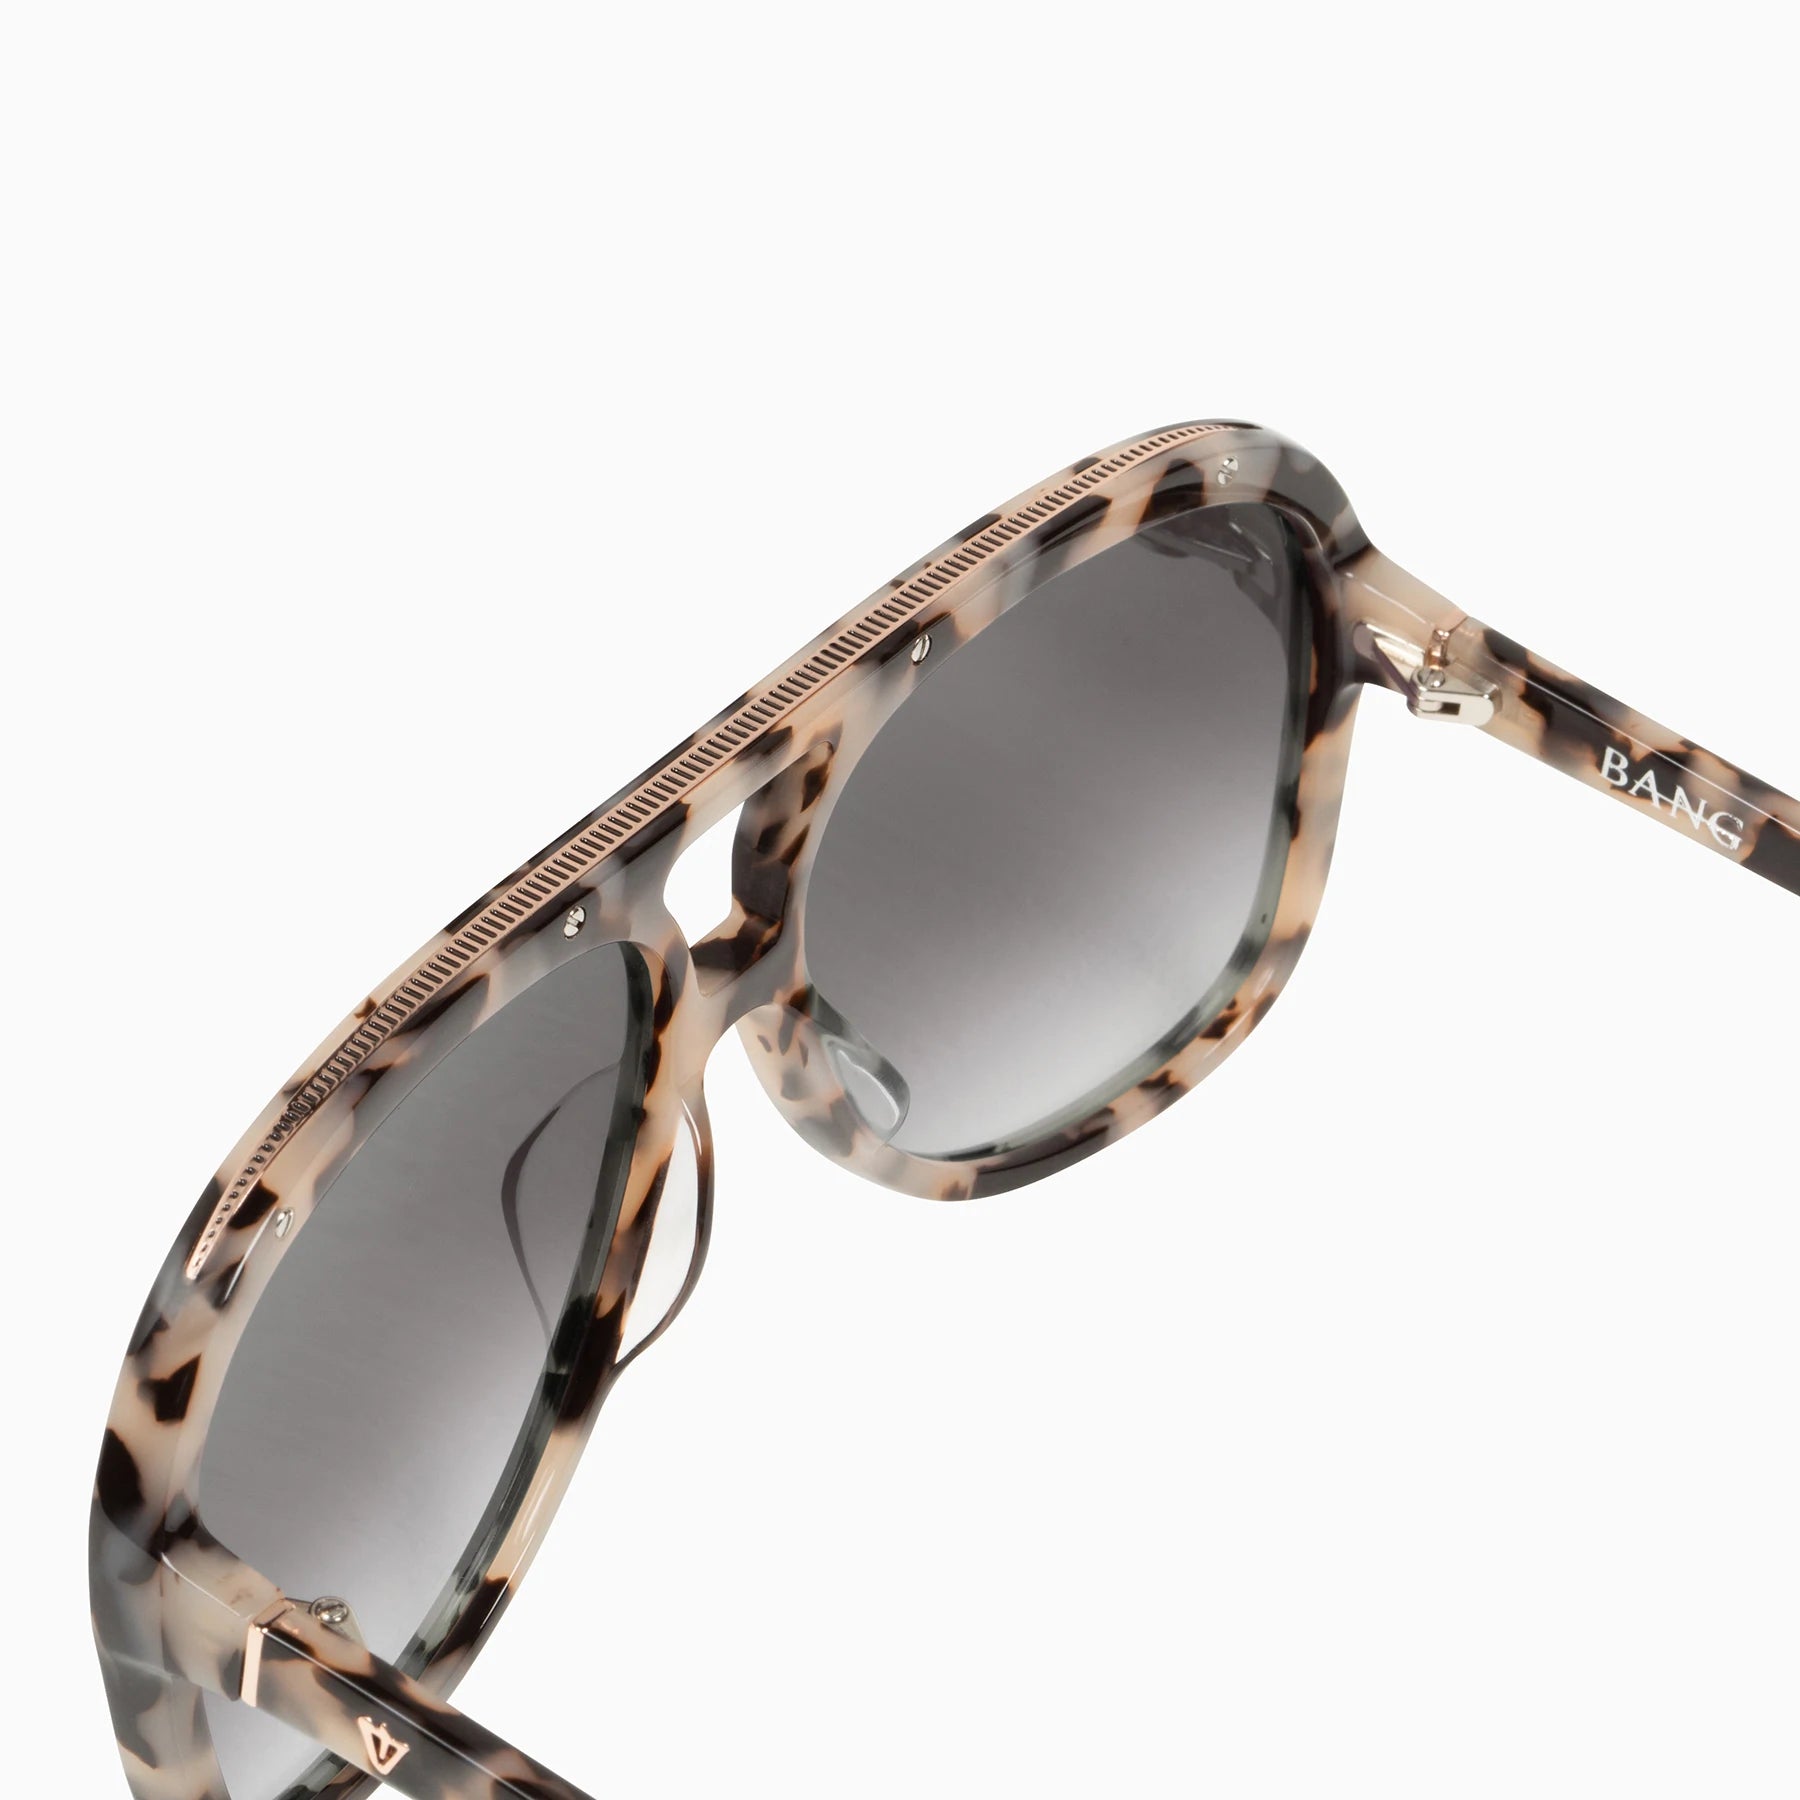 Bang Sunglasses / Ivory Tort